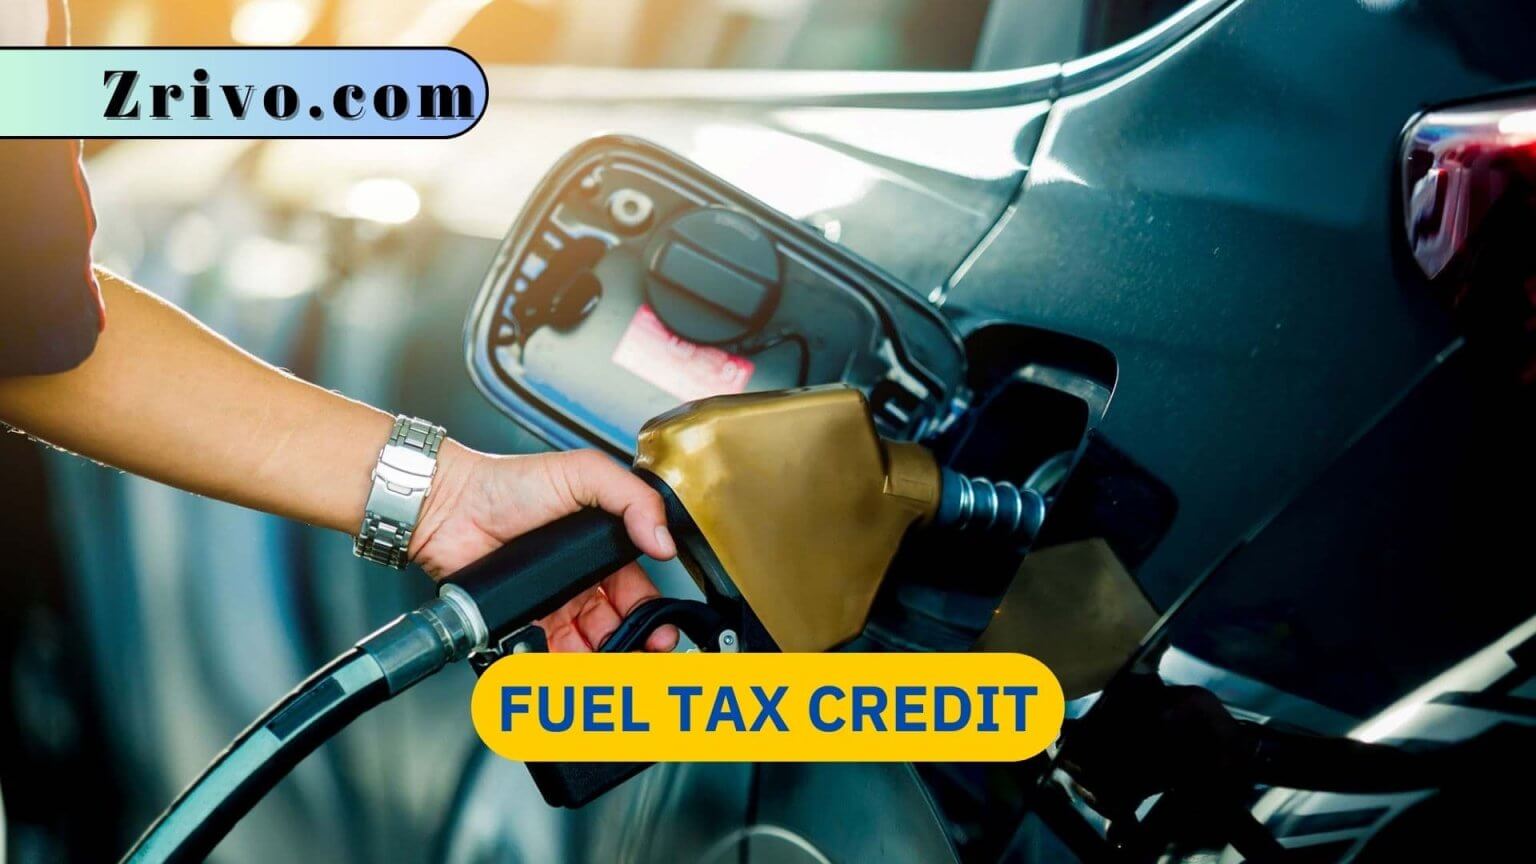 historic-alternative-fuel-tax-credit-fuels-fix